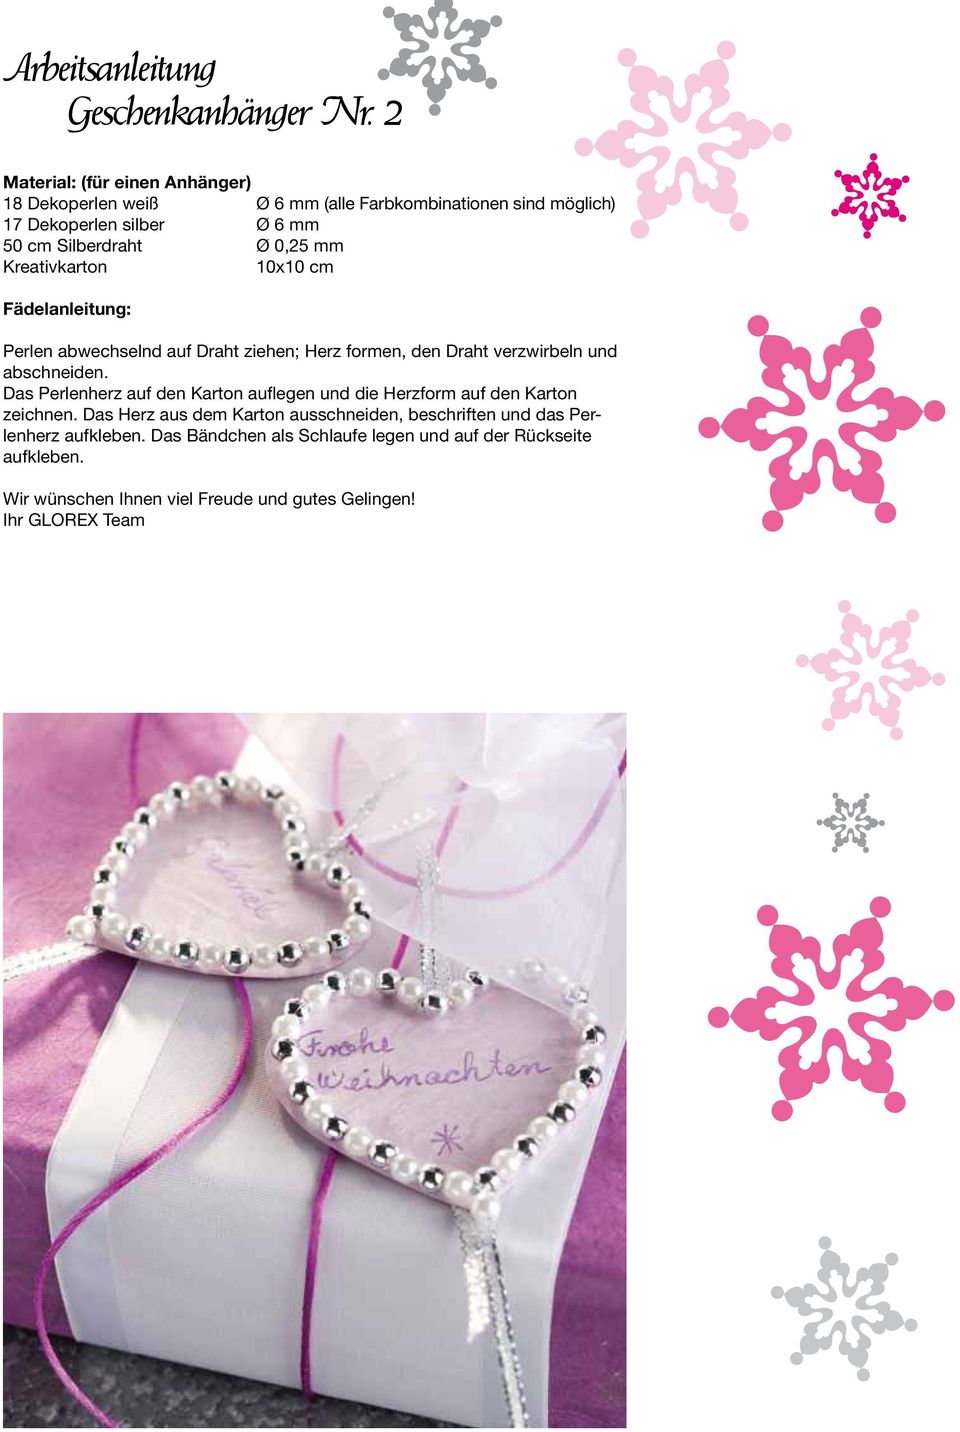 Silberdraht Ø 0,25 mm Kreativkarton 10x10 cm Perlen abwechselnd auf ziehen; Herz formen, den verzwirbeln und abschneiden.